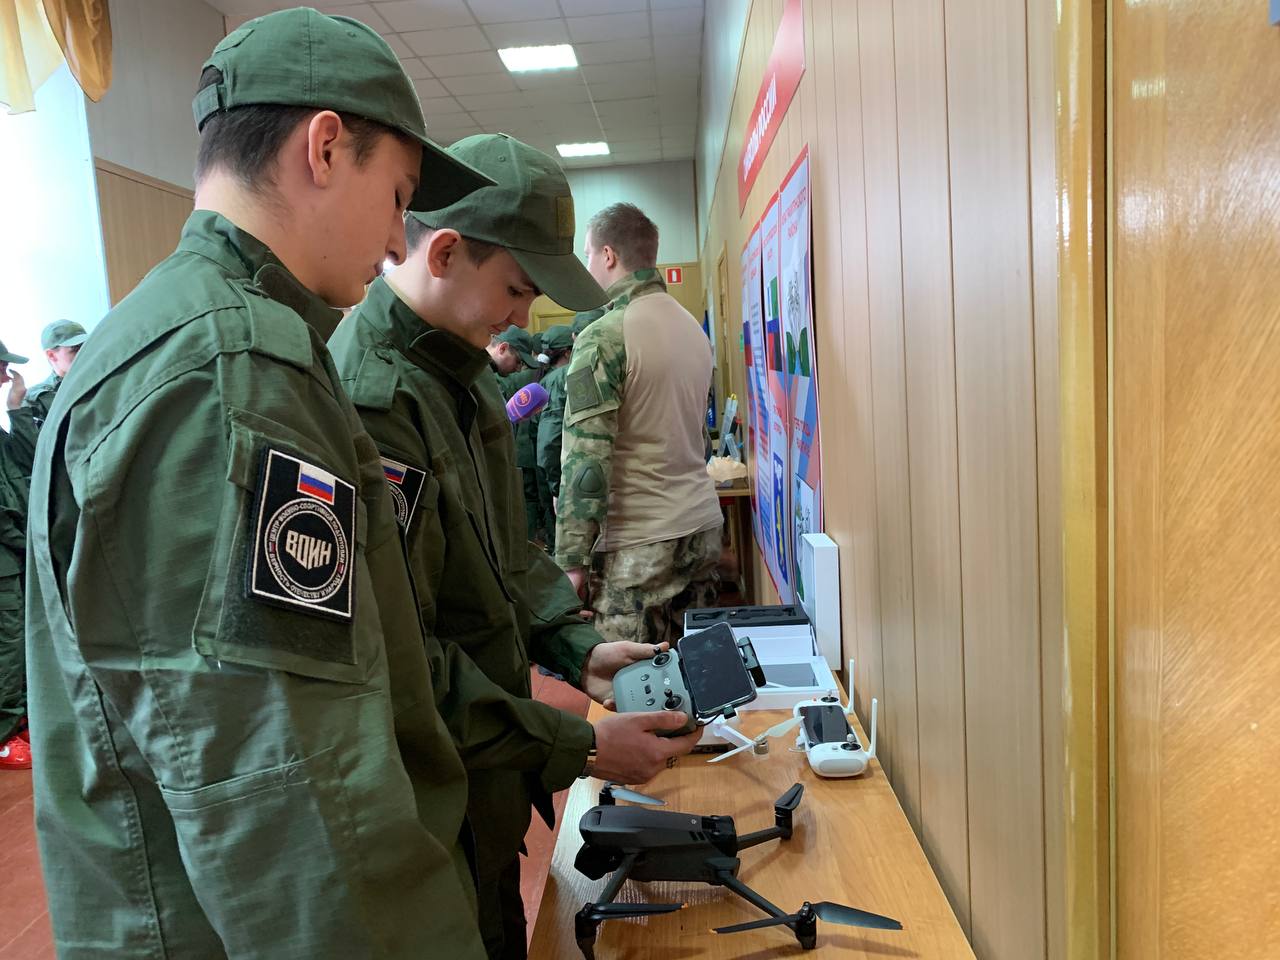 В Ракитном состоялось открытие второй смены центра развития военно-спортивной подготовки и патриотического воспитания молодёжи «Воин».